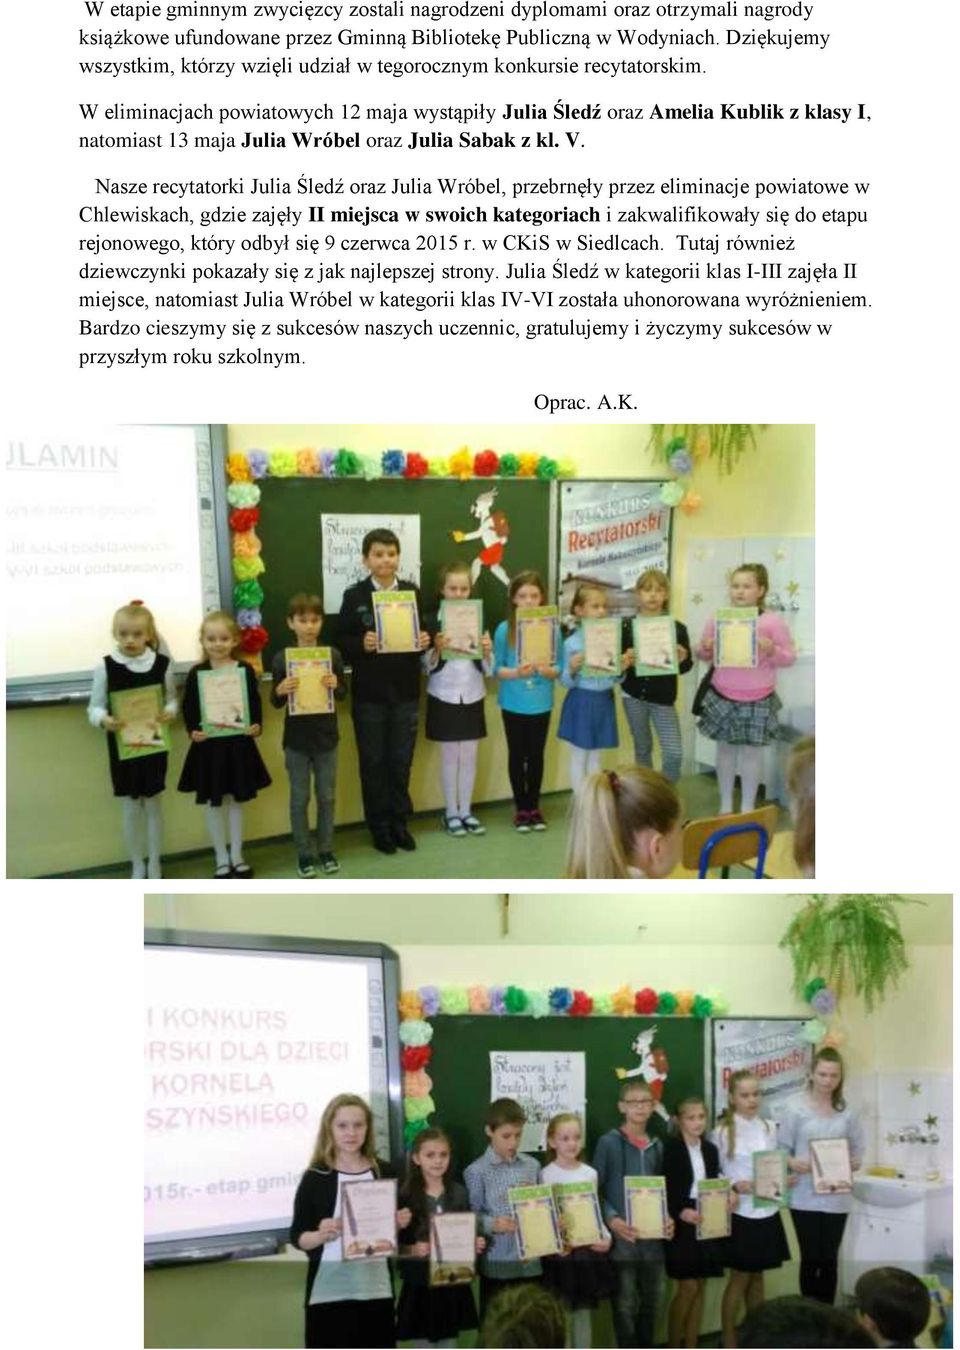 W eliminacjach powiatowych 12 maja wystąpiły Julia Śledź oraz Amelia Kublik z klasy I, natomiast 13 maja Julia Wróbel oraz Julia Sabak z kl. V.